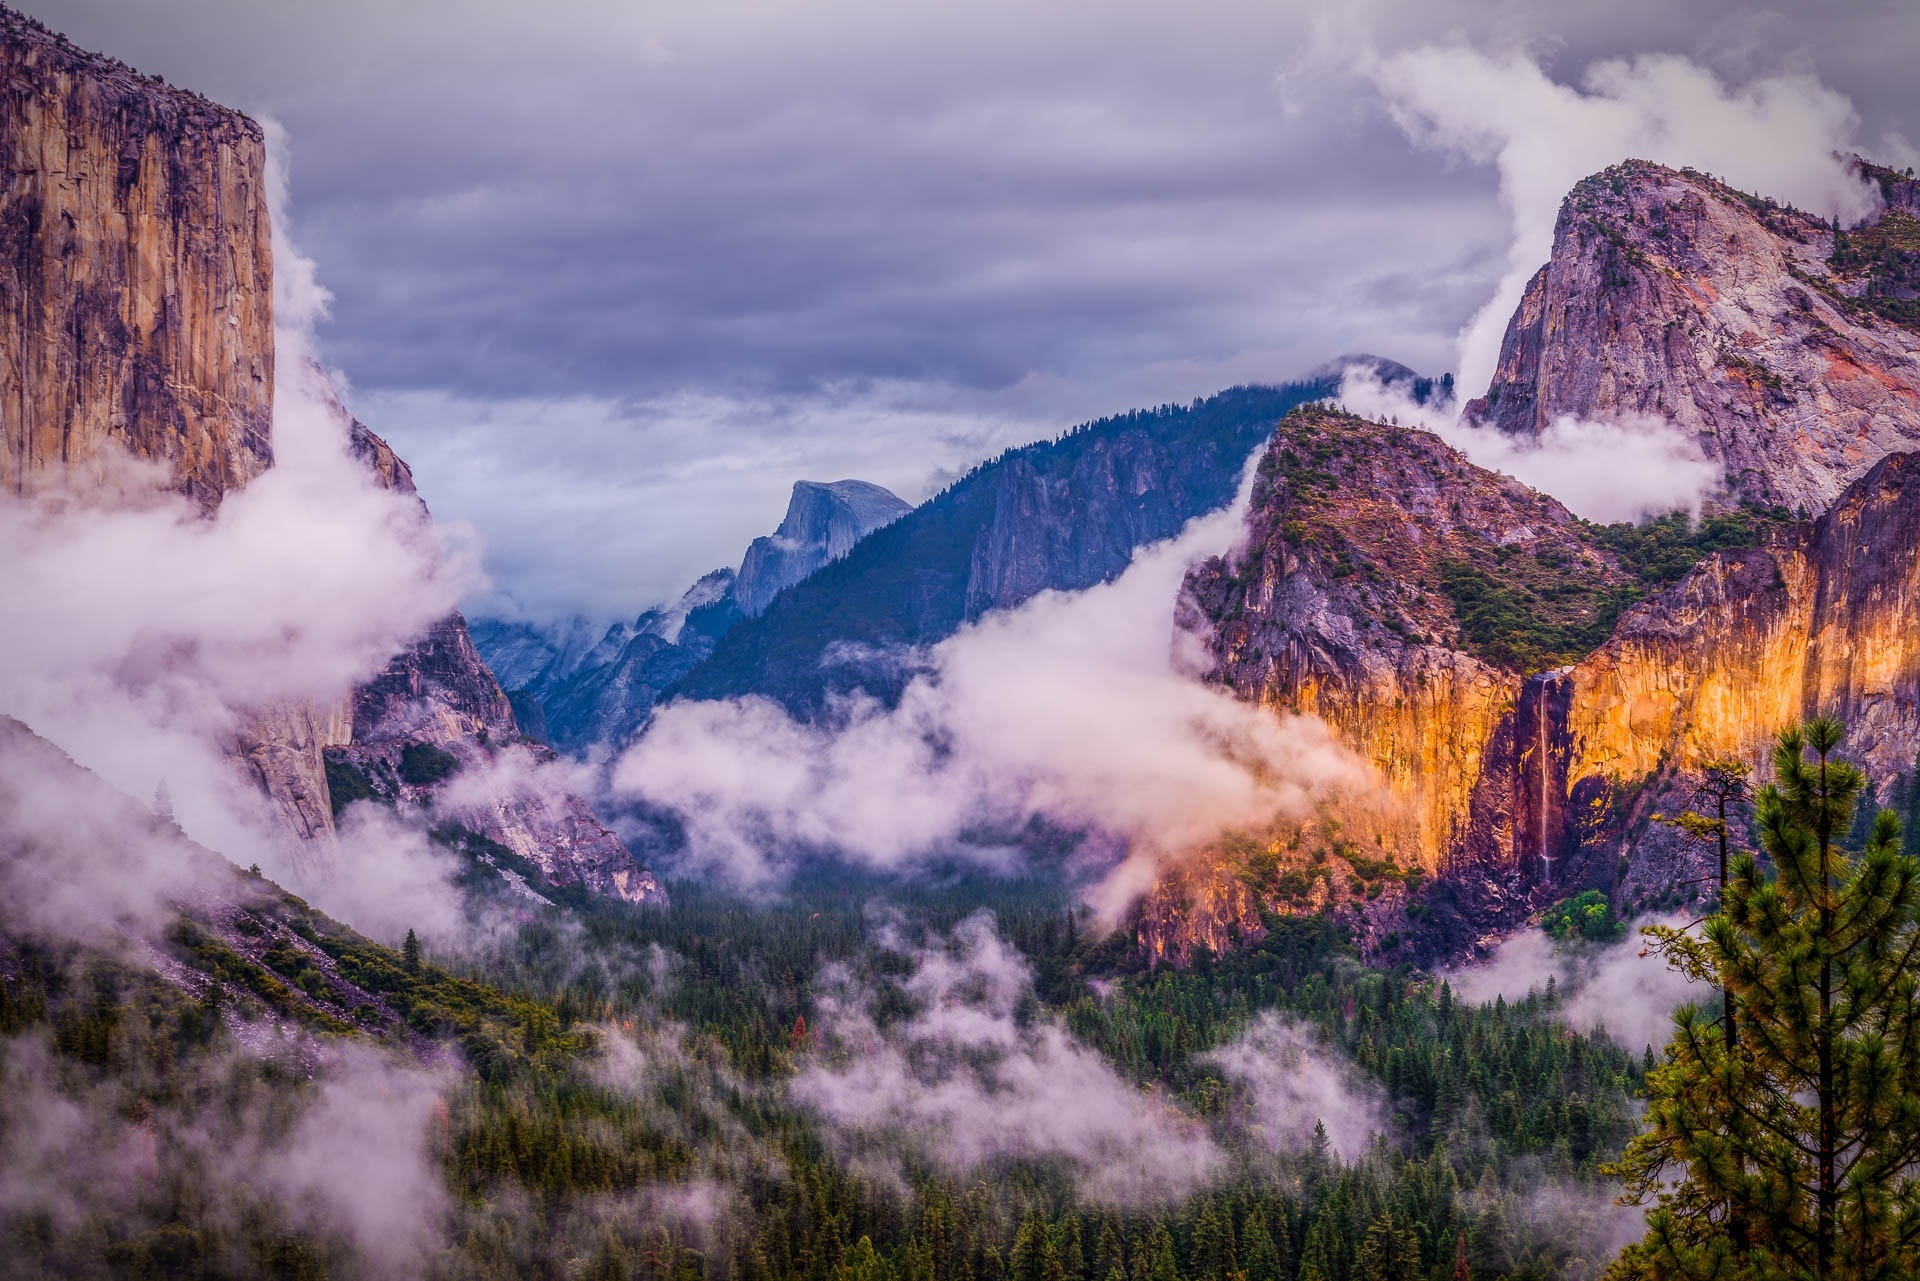 Скачать картинку Природа, Облака, Гора, Лес, Сша, Национальный Парк, Калифорния, Йосемитский Национальный Парк, Земля/природа, Утёс в телефон бесплатно.